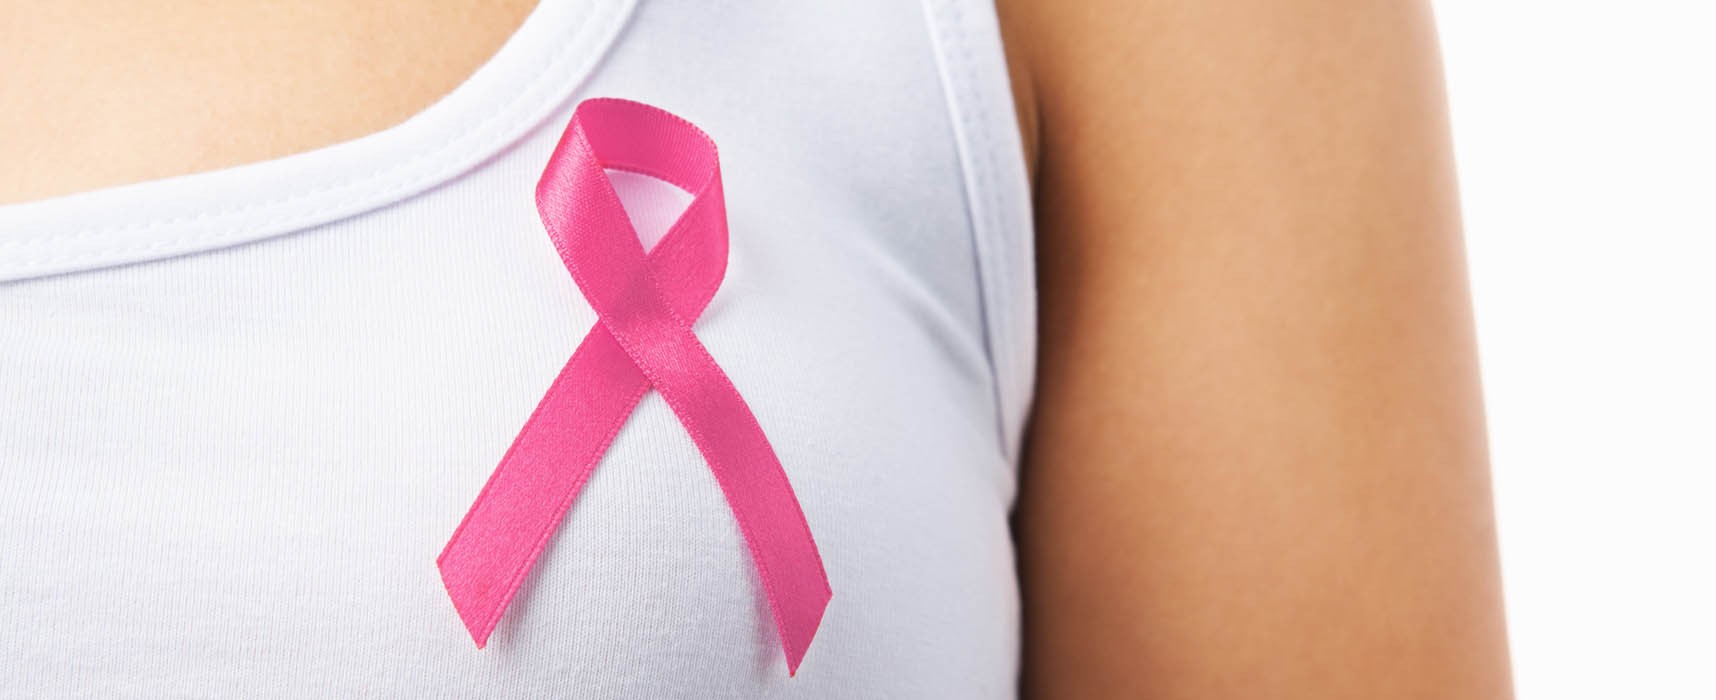 Bridgestone pone en marcha un programa de prevención del cáncer de mama